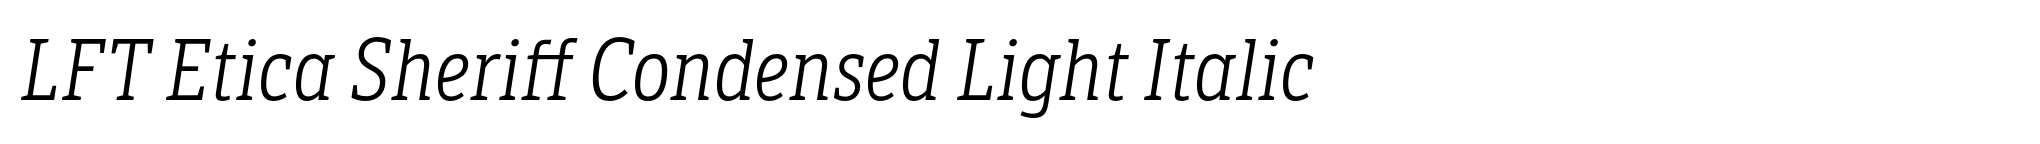 LFT Etica Sheriff Condensed Light Italic image